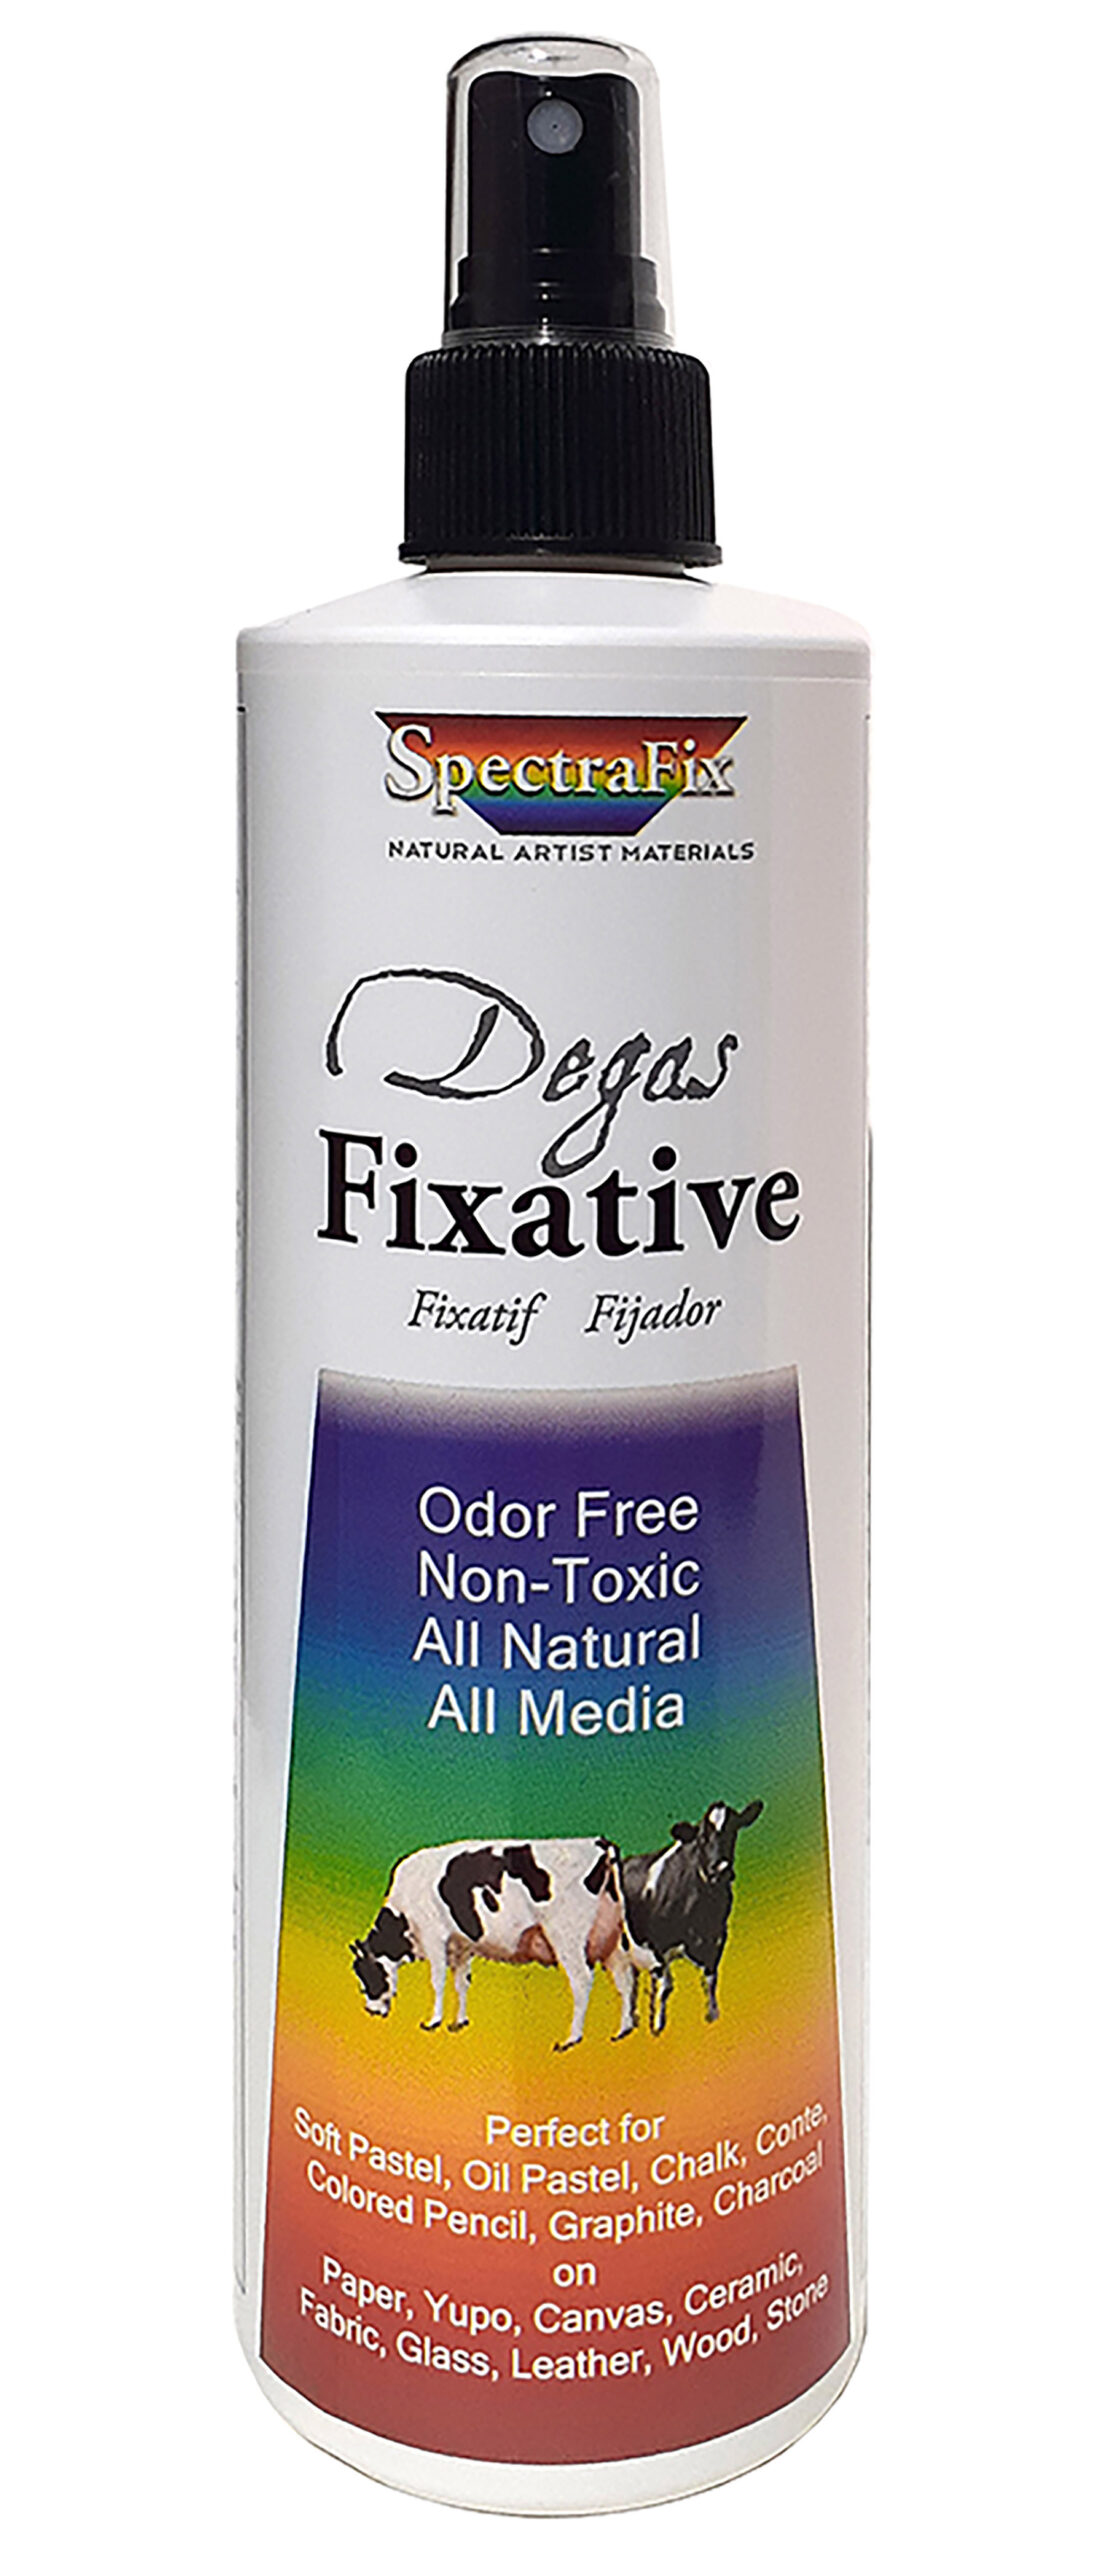  SpectraFix SFX-31270 12 oz Fixative Spray